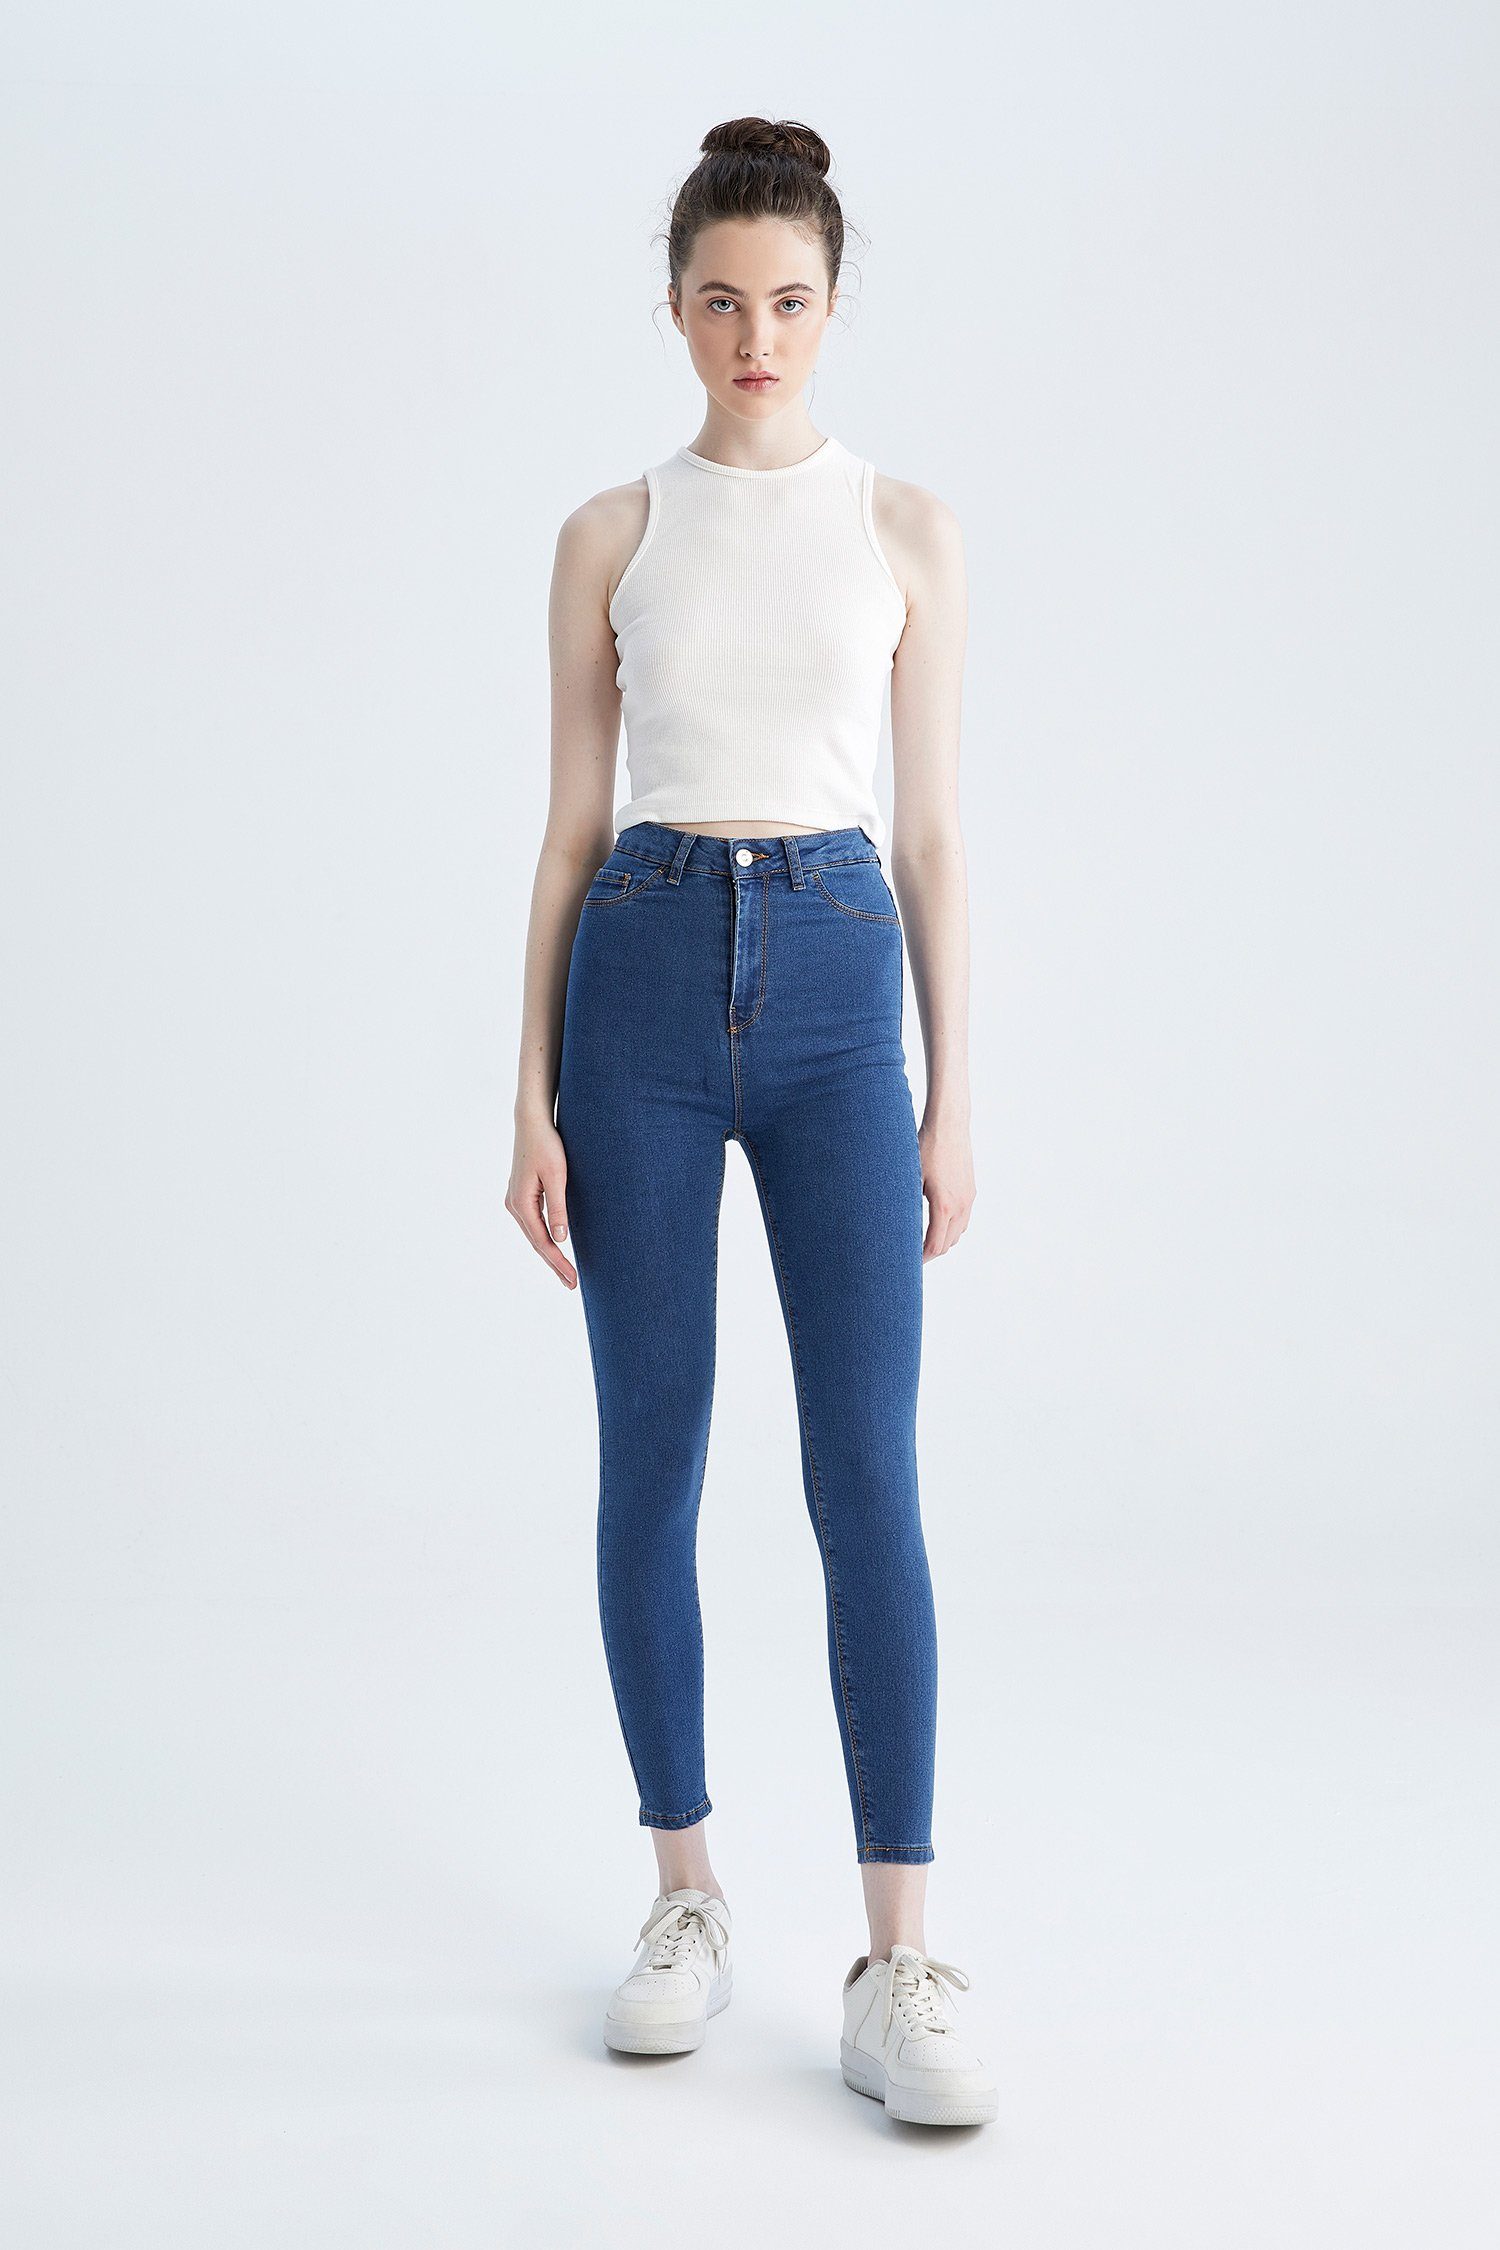 DeFacto Skinny-fit-Jeans Skinny-fit-Jeans Blau